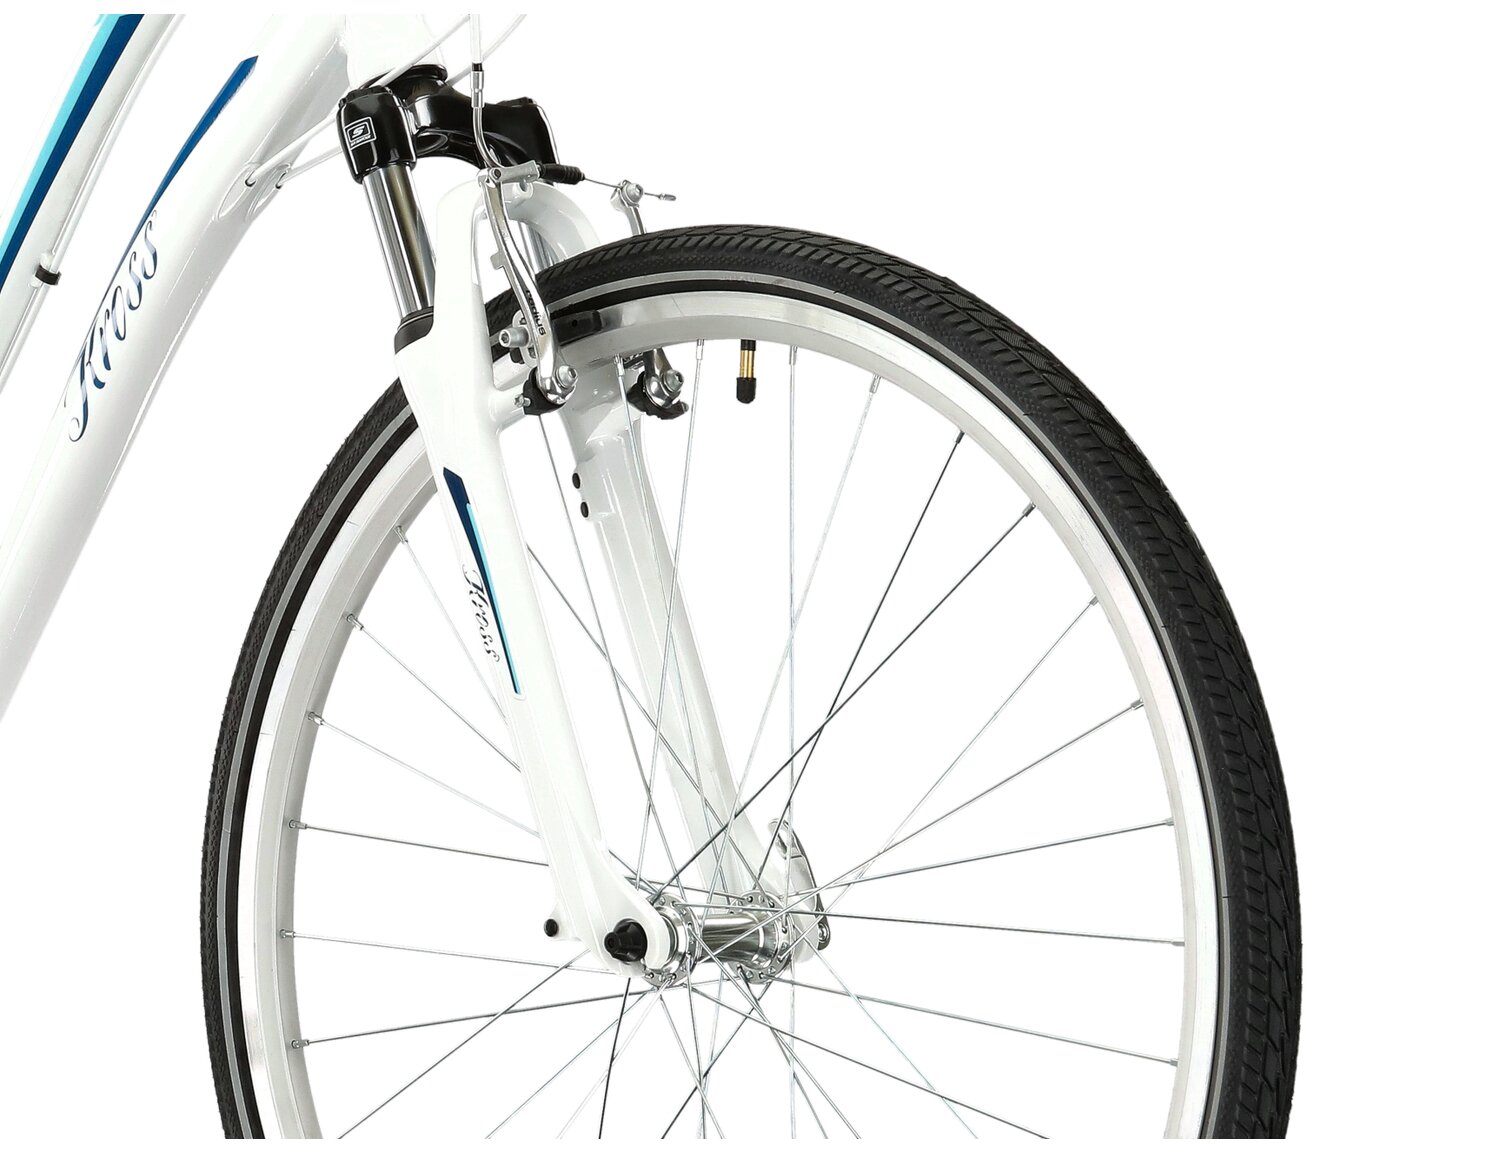 Aluminowa rama, amortyzowany widelec SR SUNTOUR M3010 o skoku 50mm oraz opony o szerokości 1,5 cala w rowerze miejskim KROSS Modo 2.0 